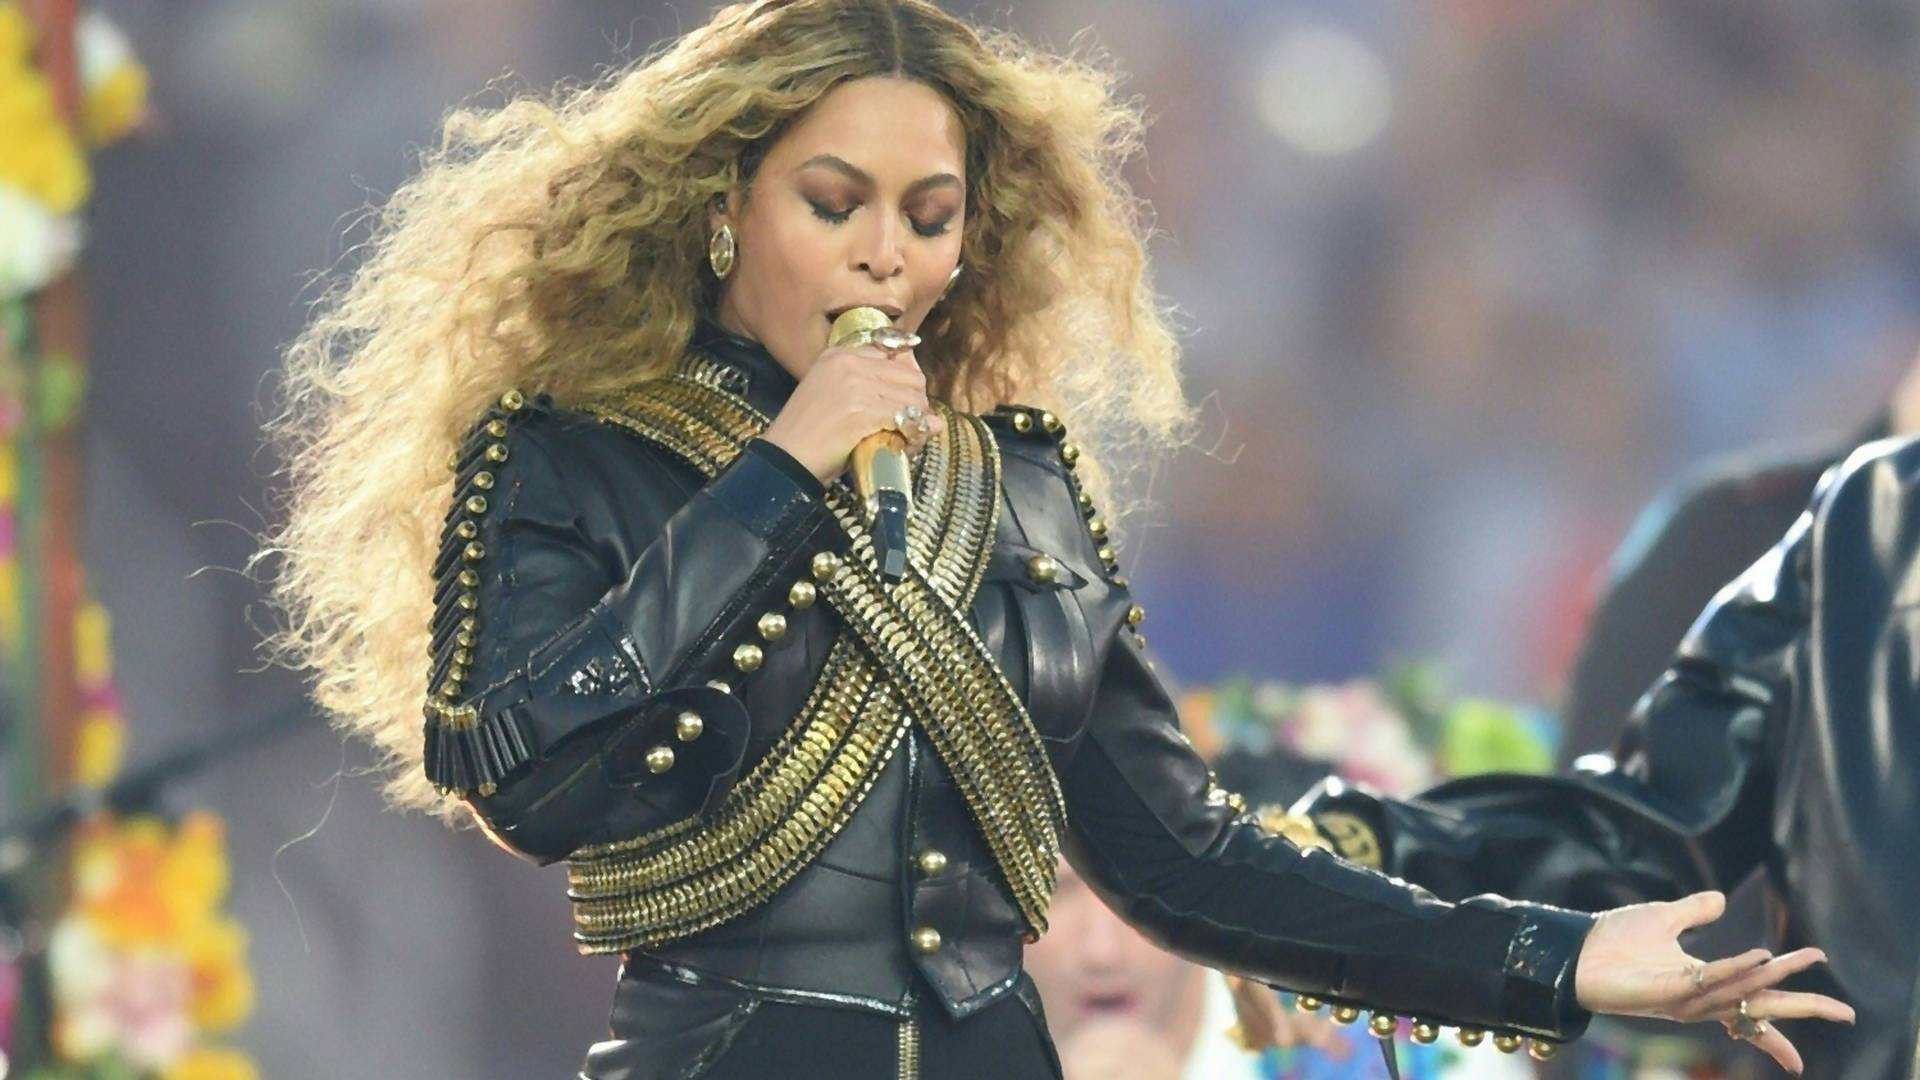 Nowa płyta Beyonce! "Lemonade" już wywołuje pierwsze kontrowersje